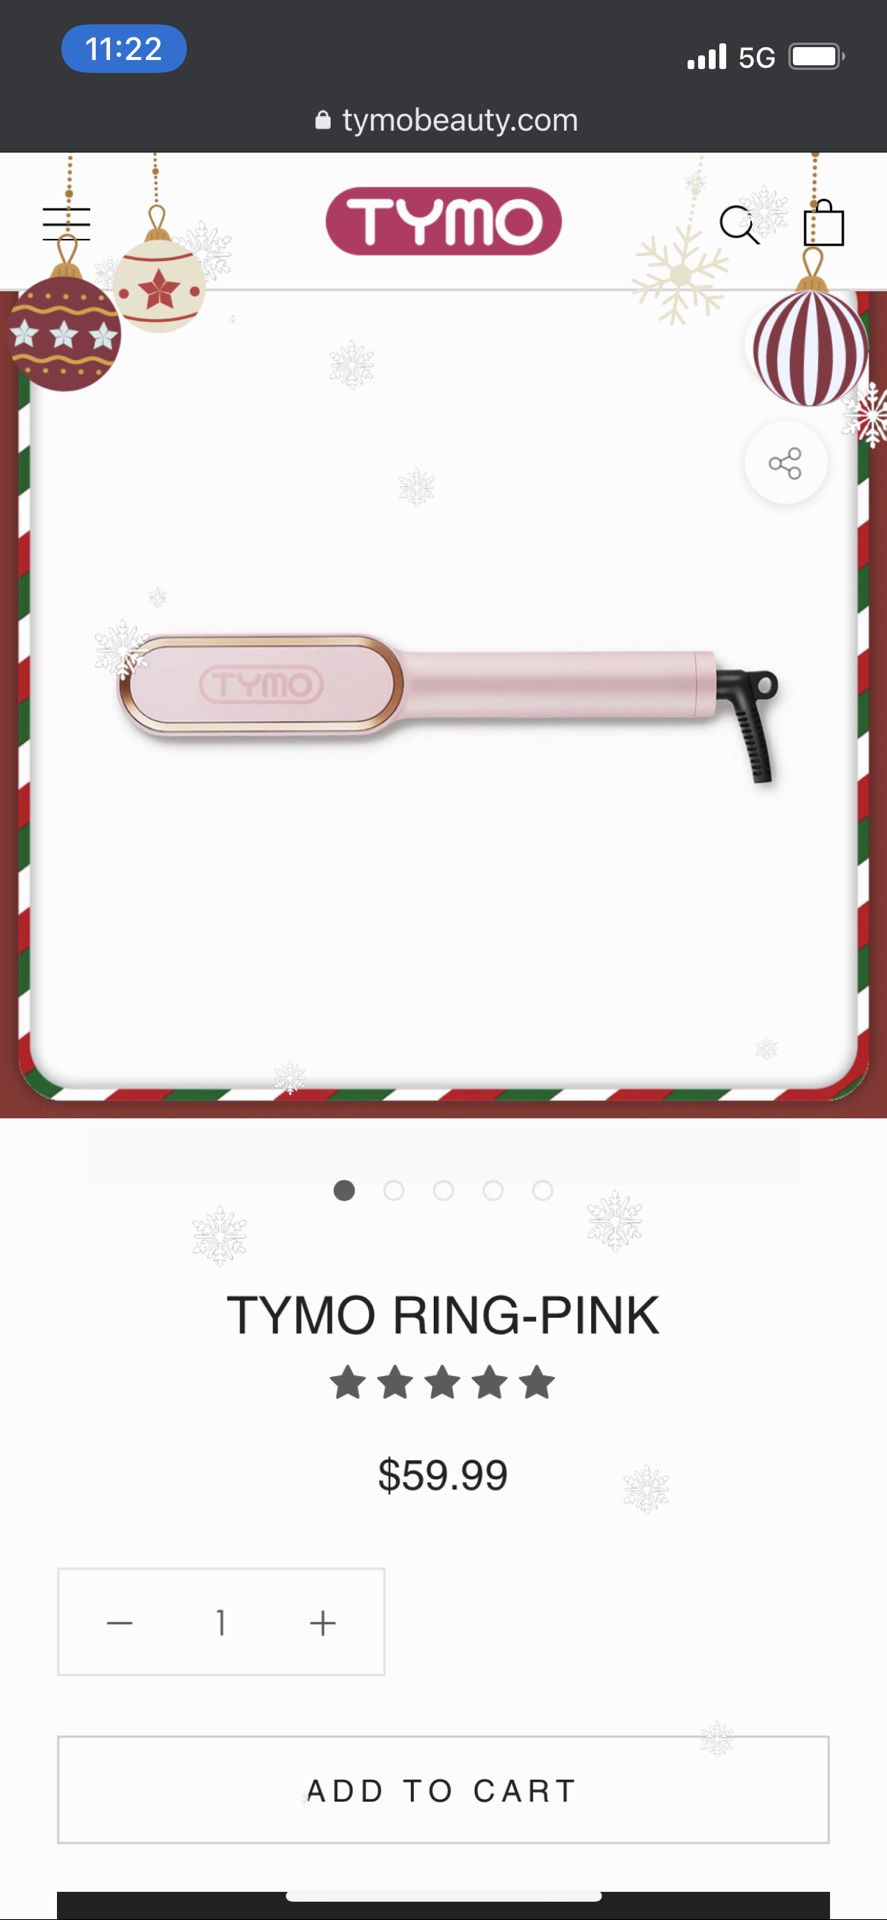 Brand New Tymo Ring Hair Straightening Comb